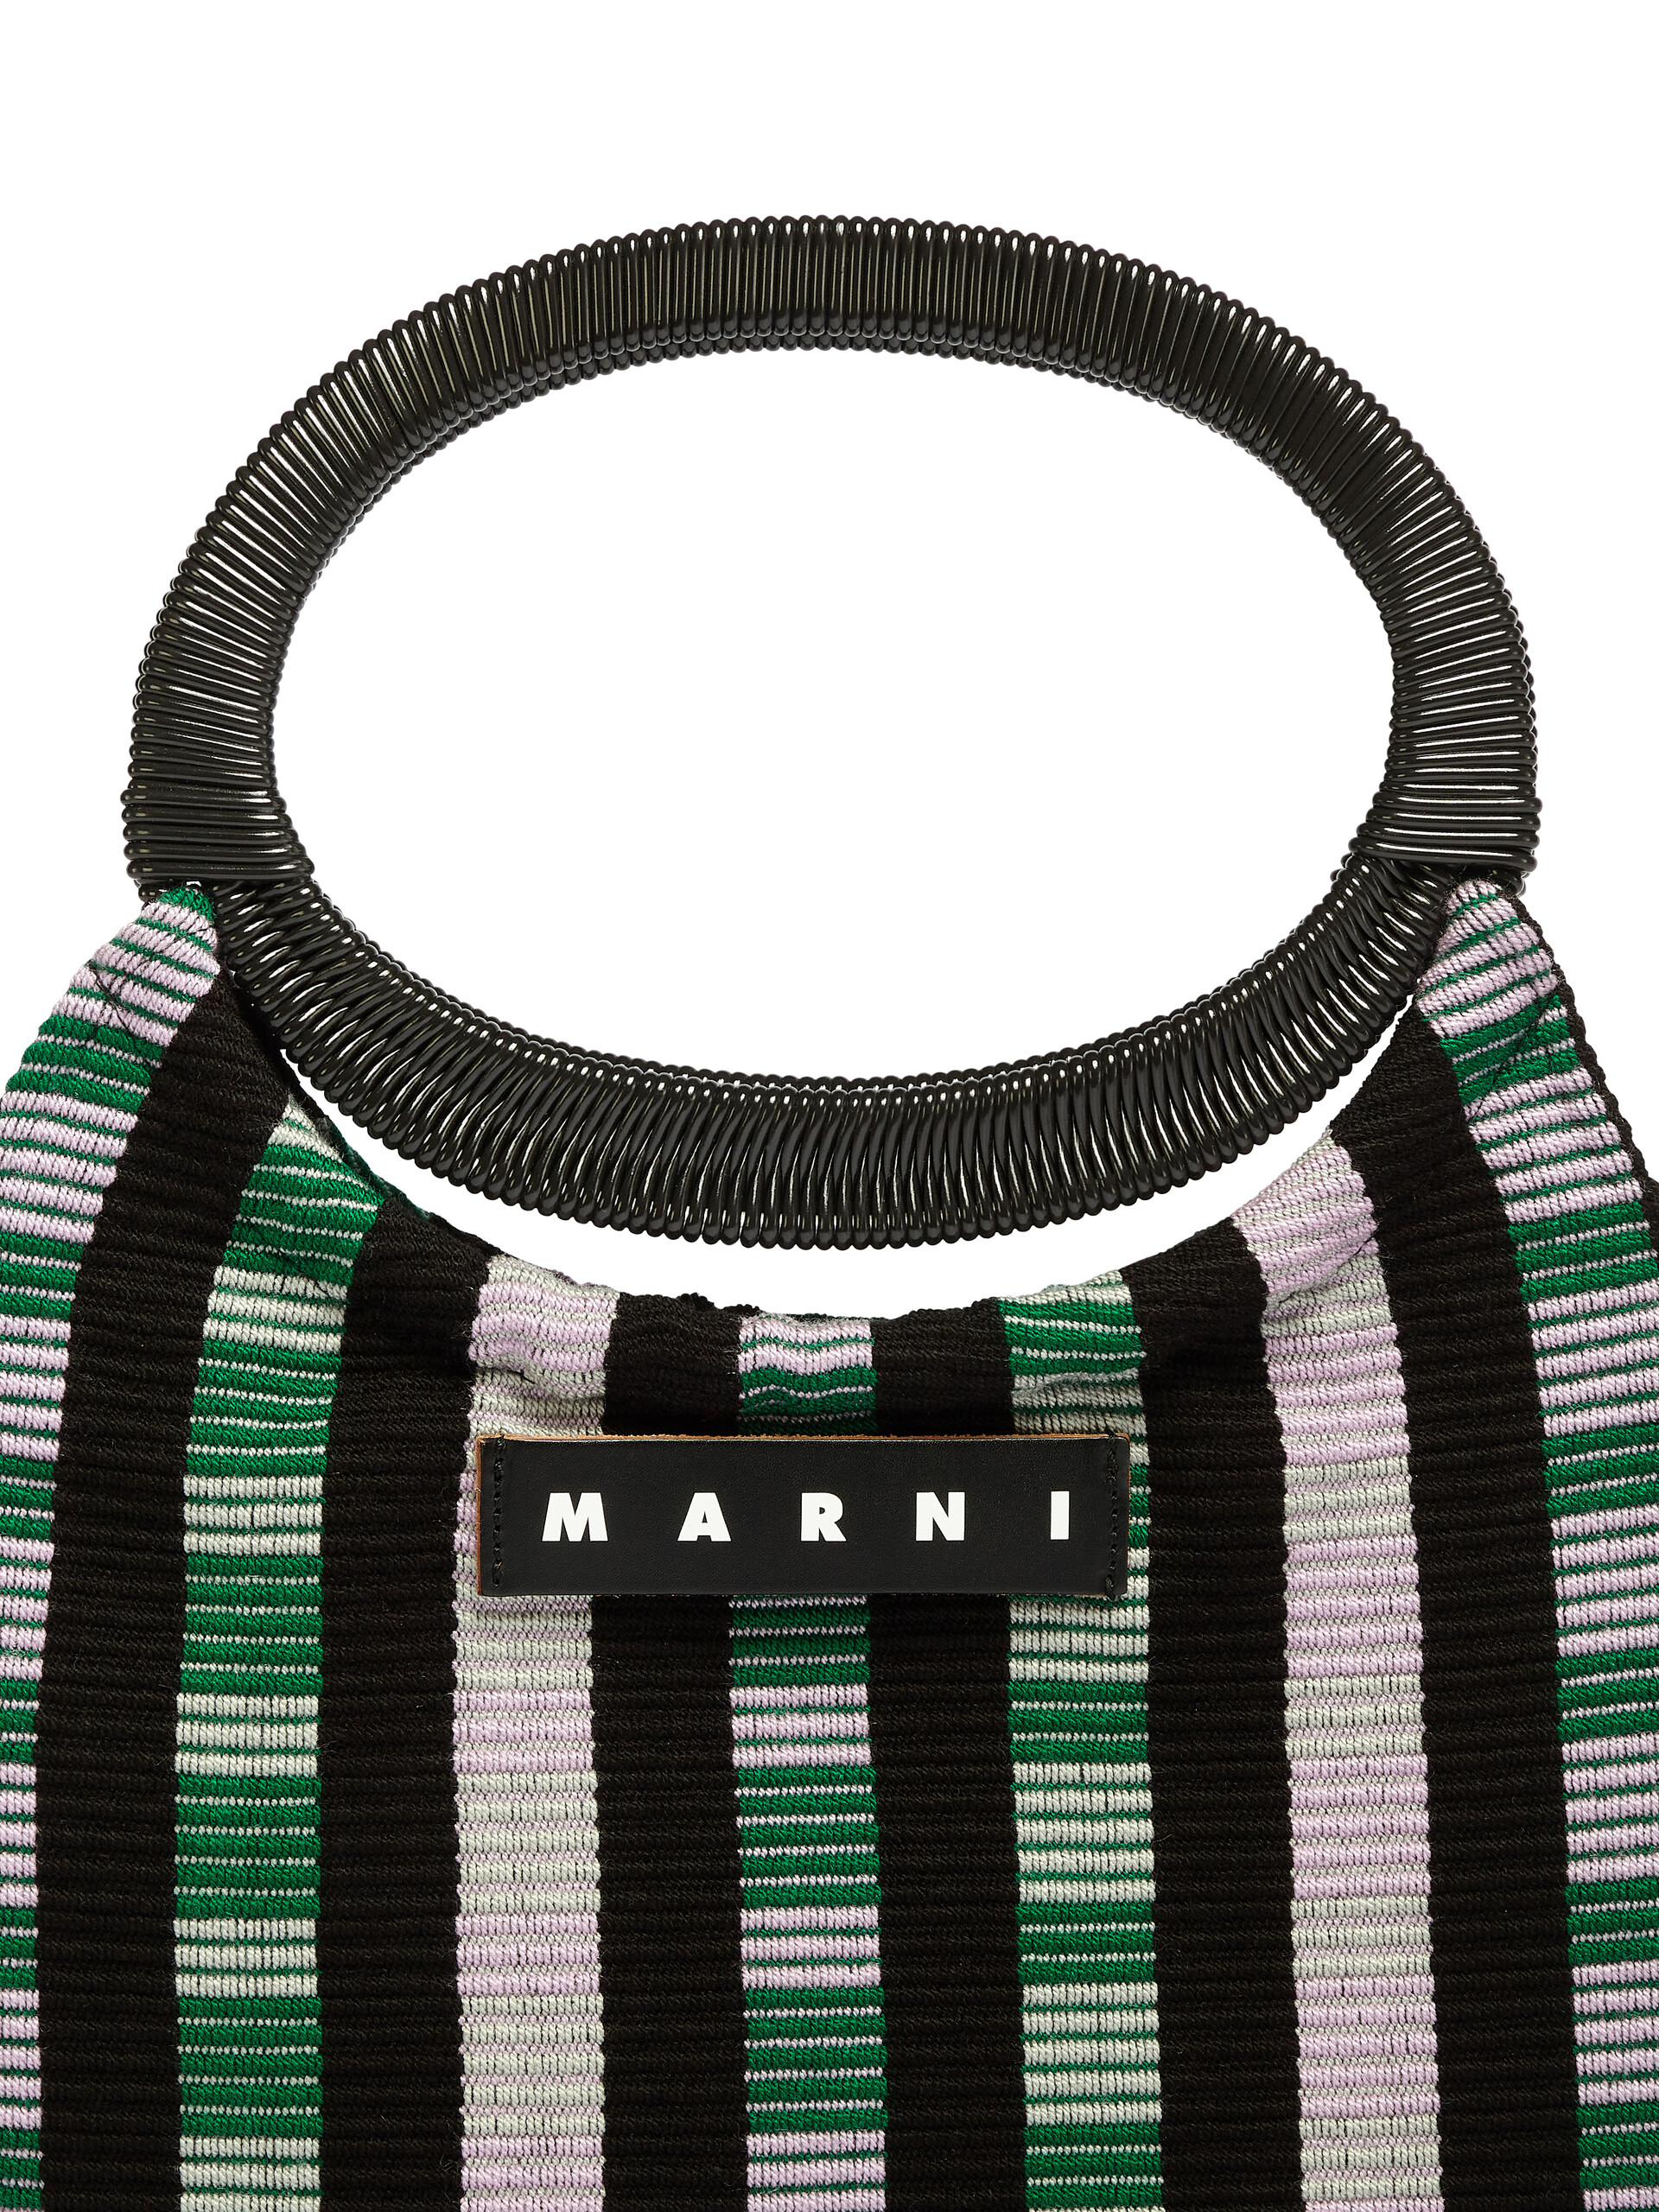 MARNI MARKET BOAT bag in multicolor lilac striped cotton - Furniture - Image 4